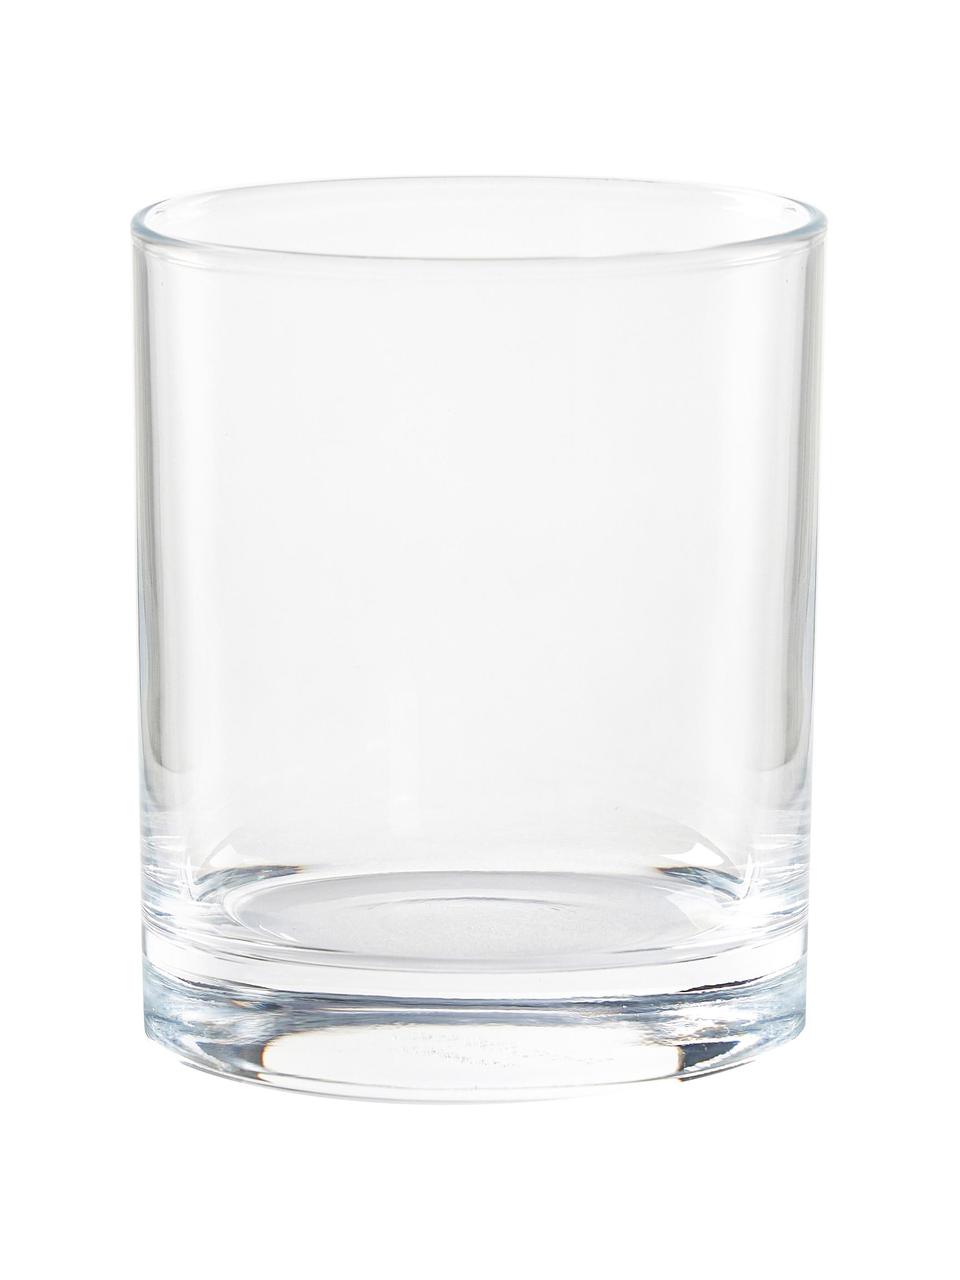 Whiskygläser Princesa, 6 Stück, Glas, Transparent, Ø 8 x H 9 cm, 310 ml